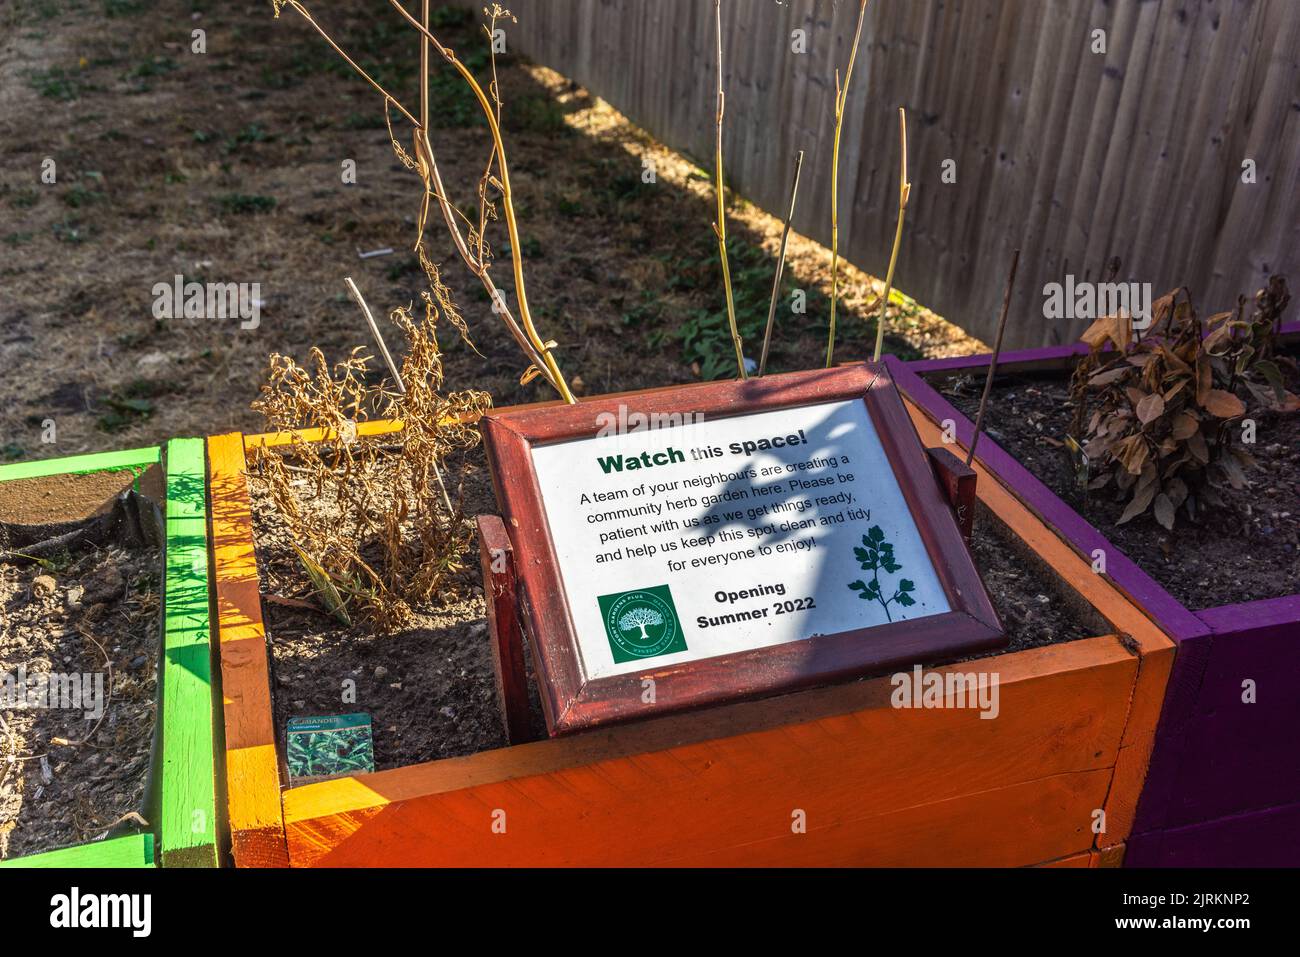 Projet communautaire de jardin d'herbes séchées pendant les conditions de sécheresse et l'interdiction de tuyau flexible qui en résulte, en août 2022, Southampton, Angleterre, Royaume-Uni Banque D'Images